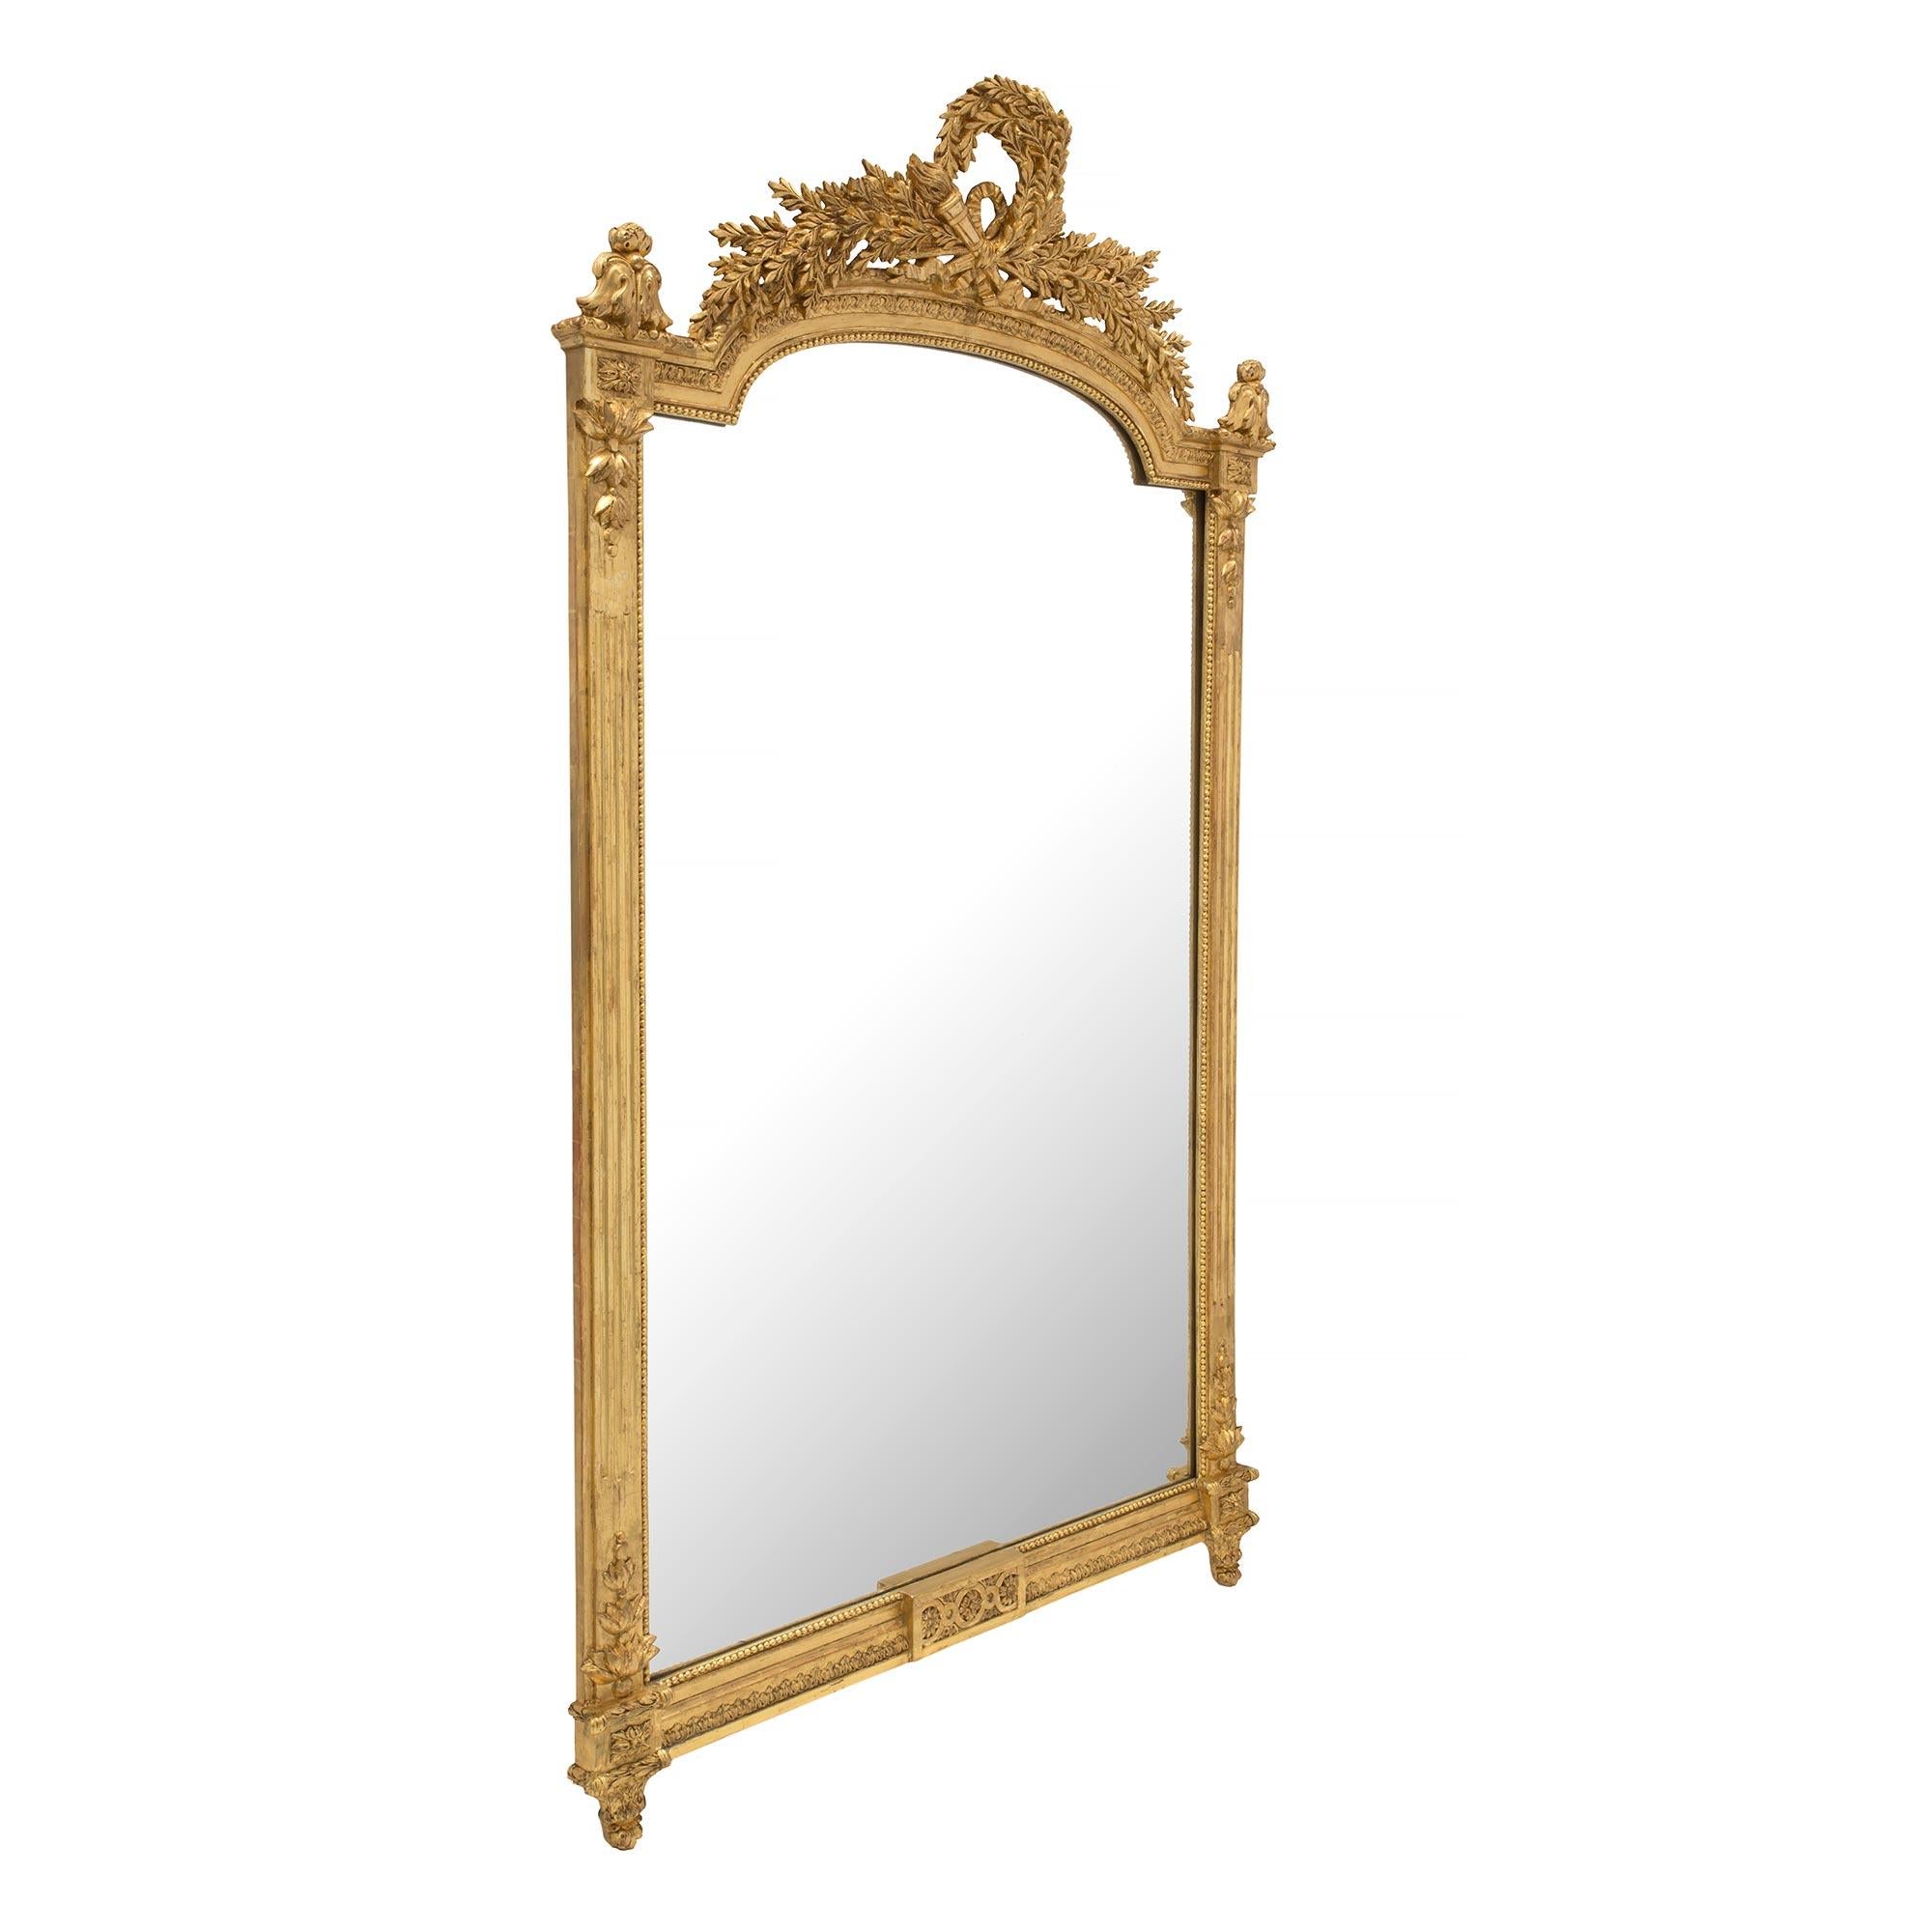 Eine sehr elegante Französisch 19. Jahrhundert Louis XVI st. Vergoldung Spiegel. Die originale Spiegelplatte ist von einer Perlenbordüre aus vergoldetem Holz mit feinen Rillen auf jeder Seite eingerahmt. An jeder Ecke befinden sich feine